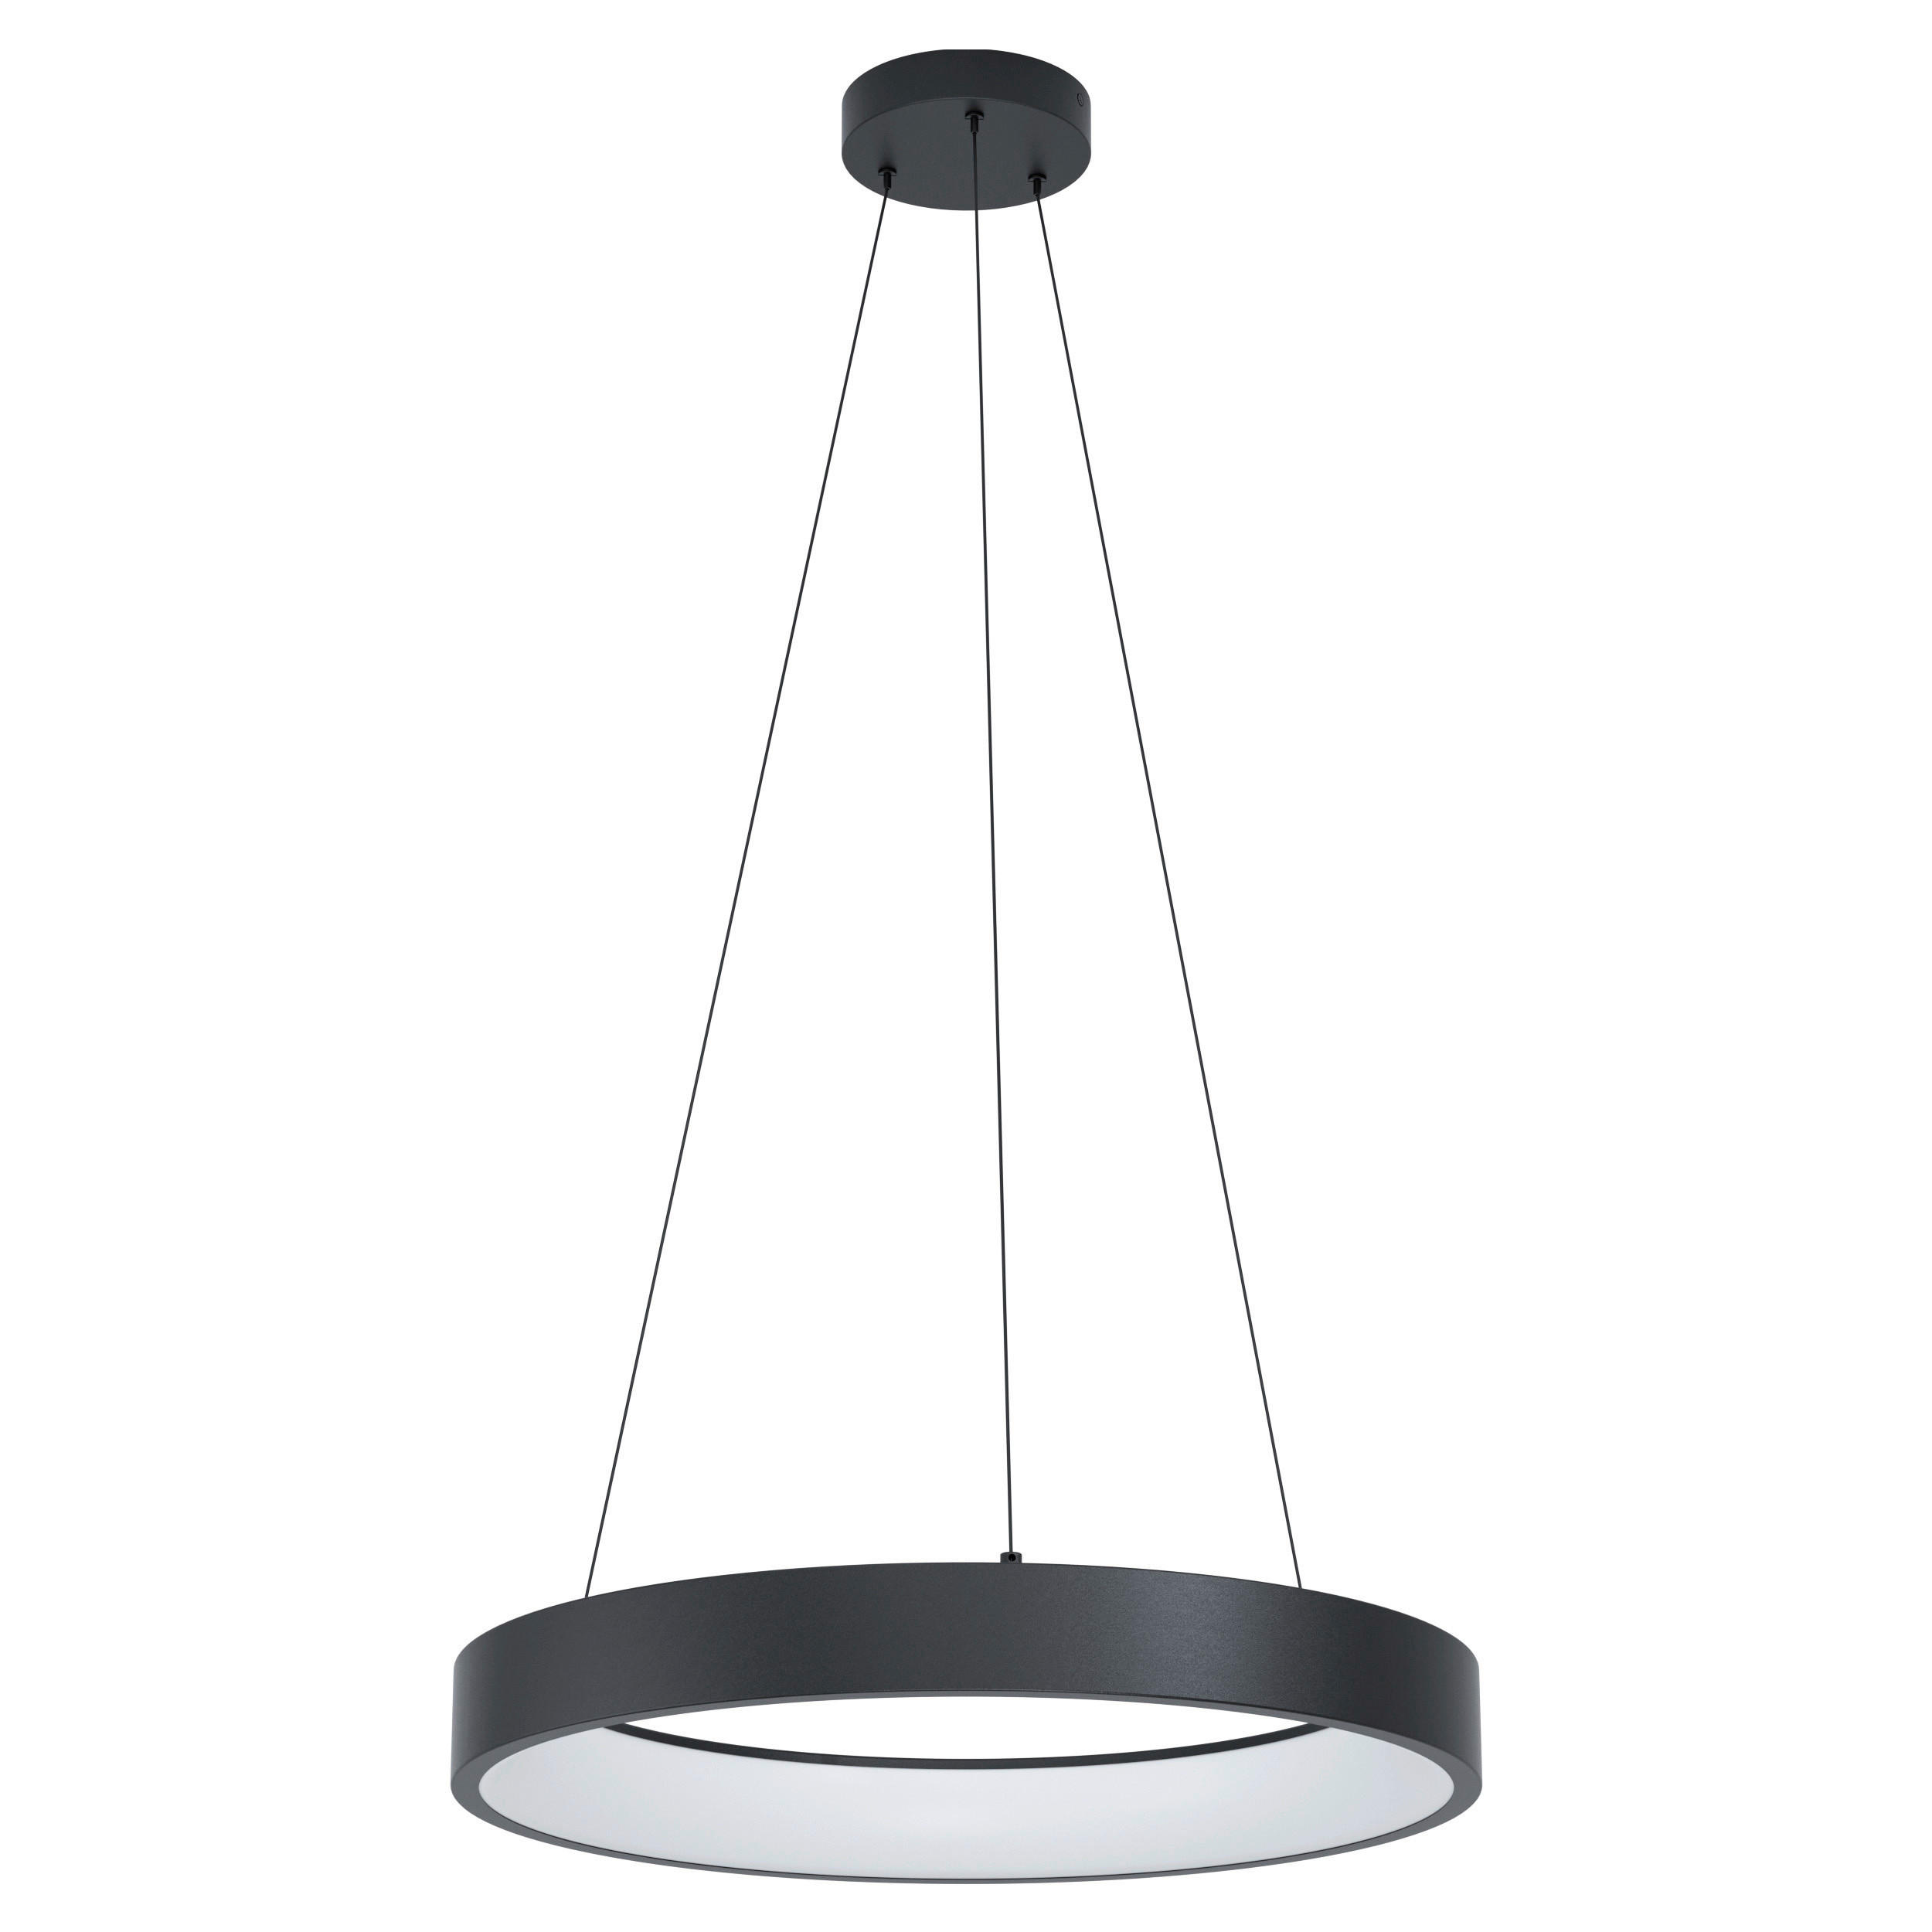 LED-HÄNGELEUCHTE Marghera-Z 60/110 cm   - Schwarz/Weiß, Design, Kunststoff/Metall (60/110cm) - Eglo